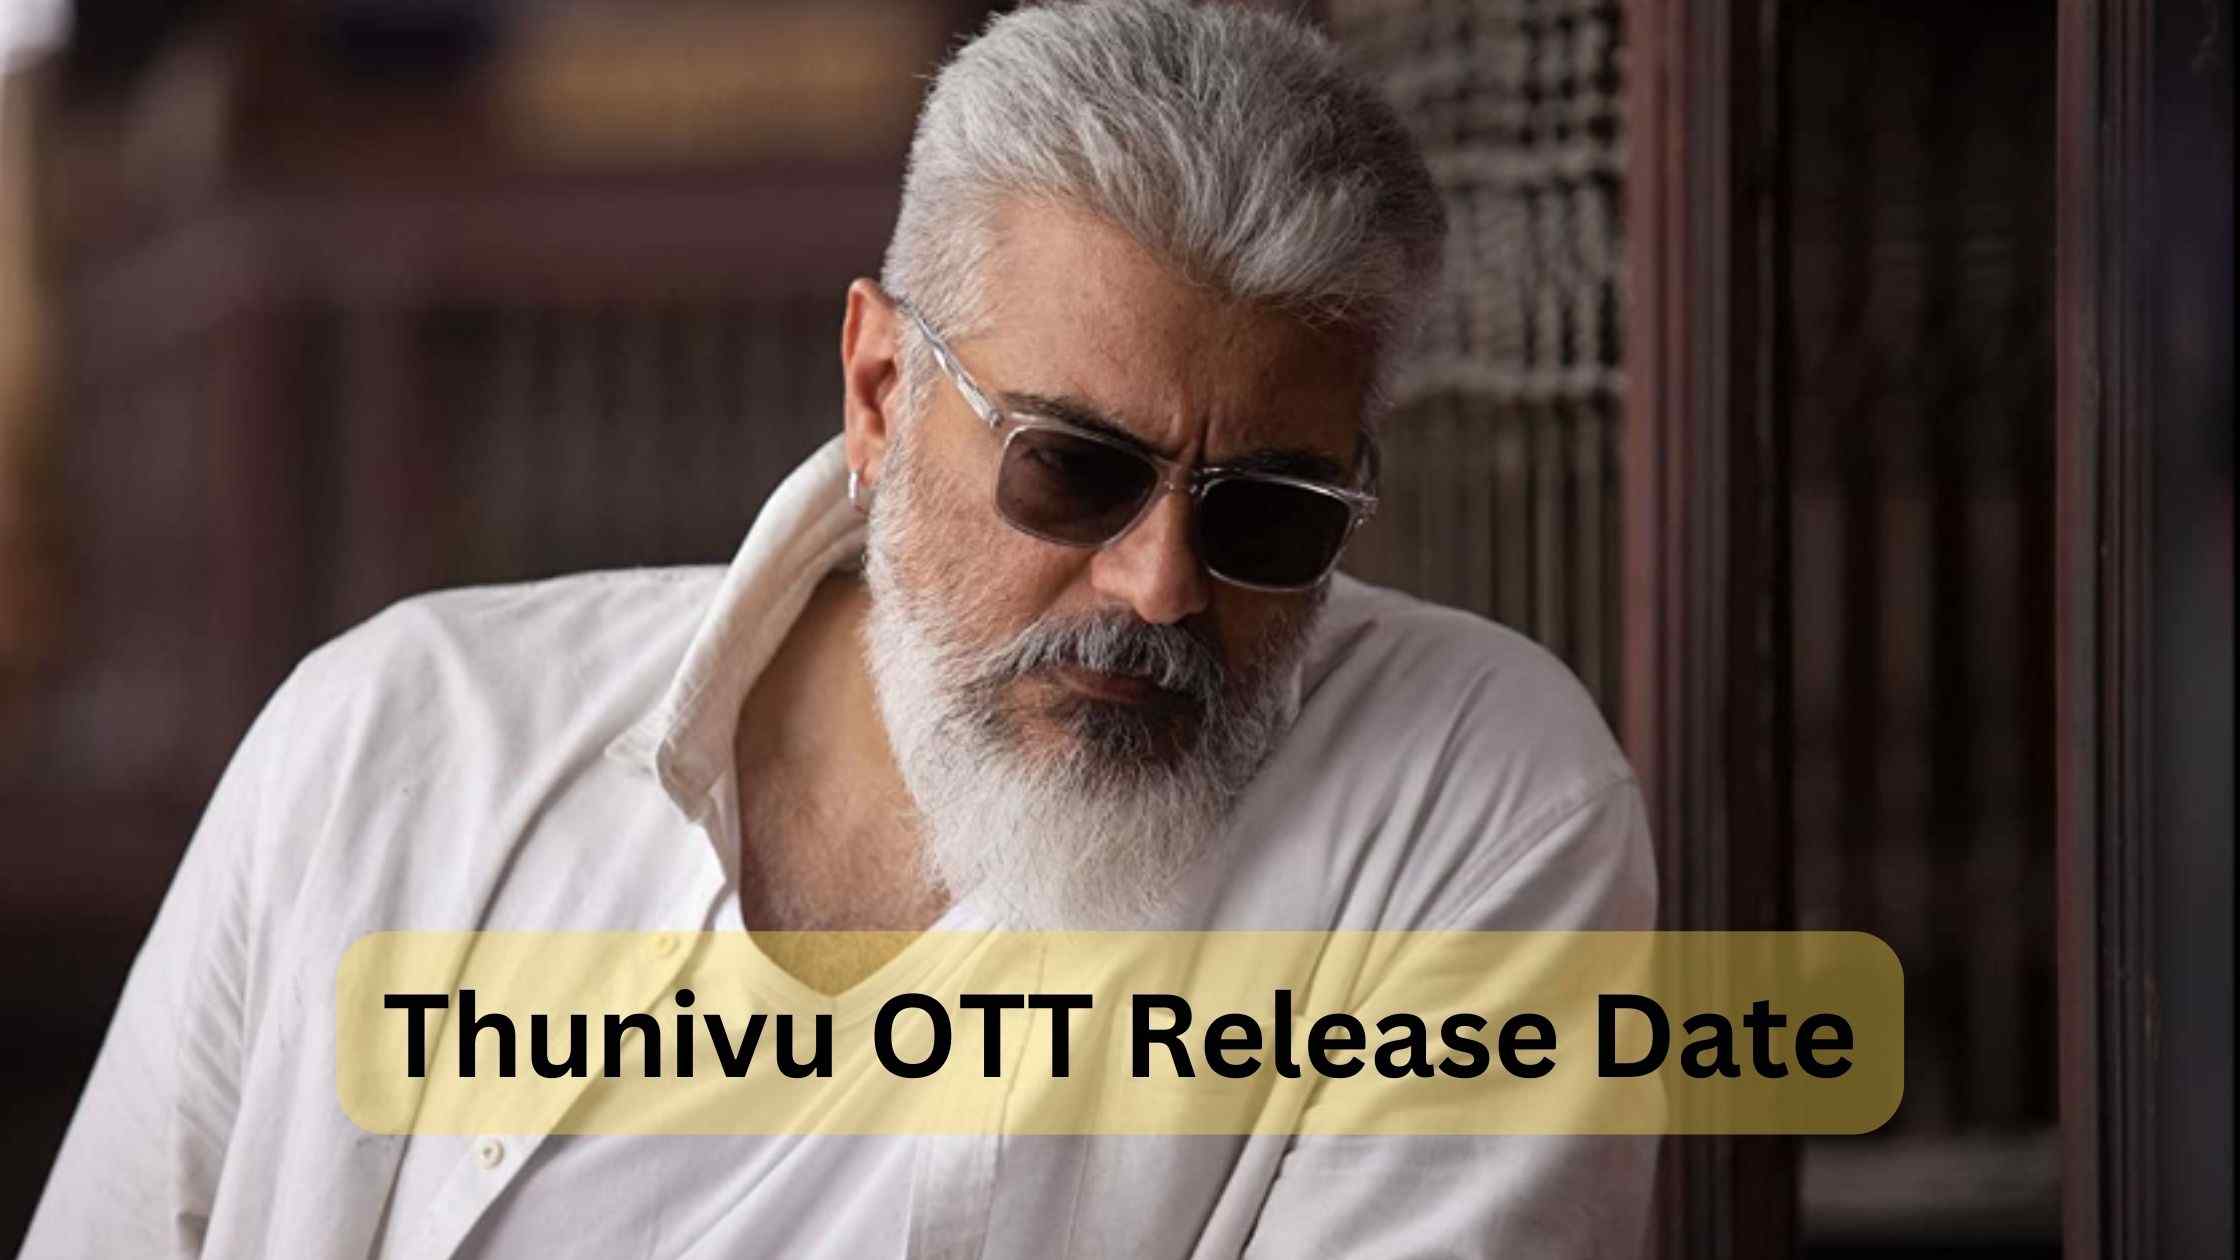 Thunivu OTT release date